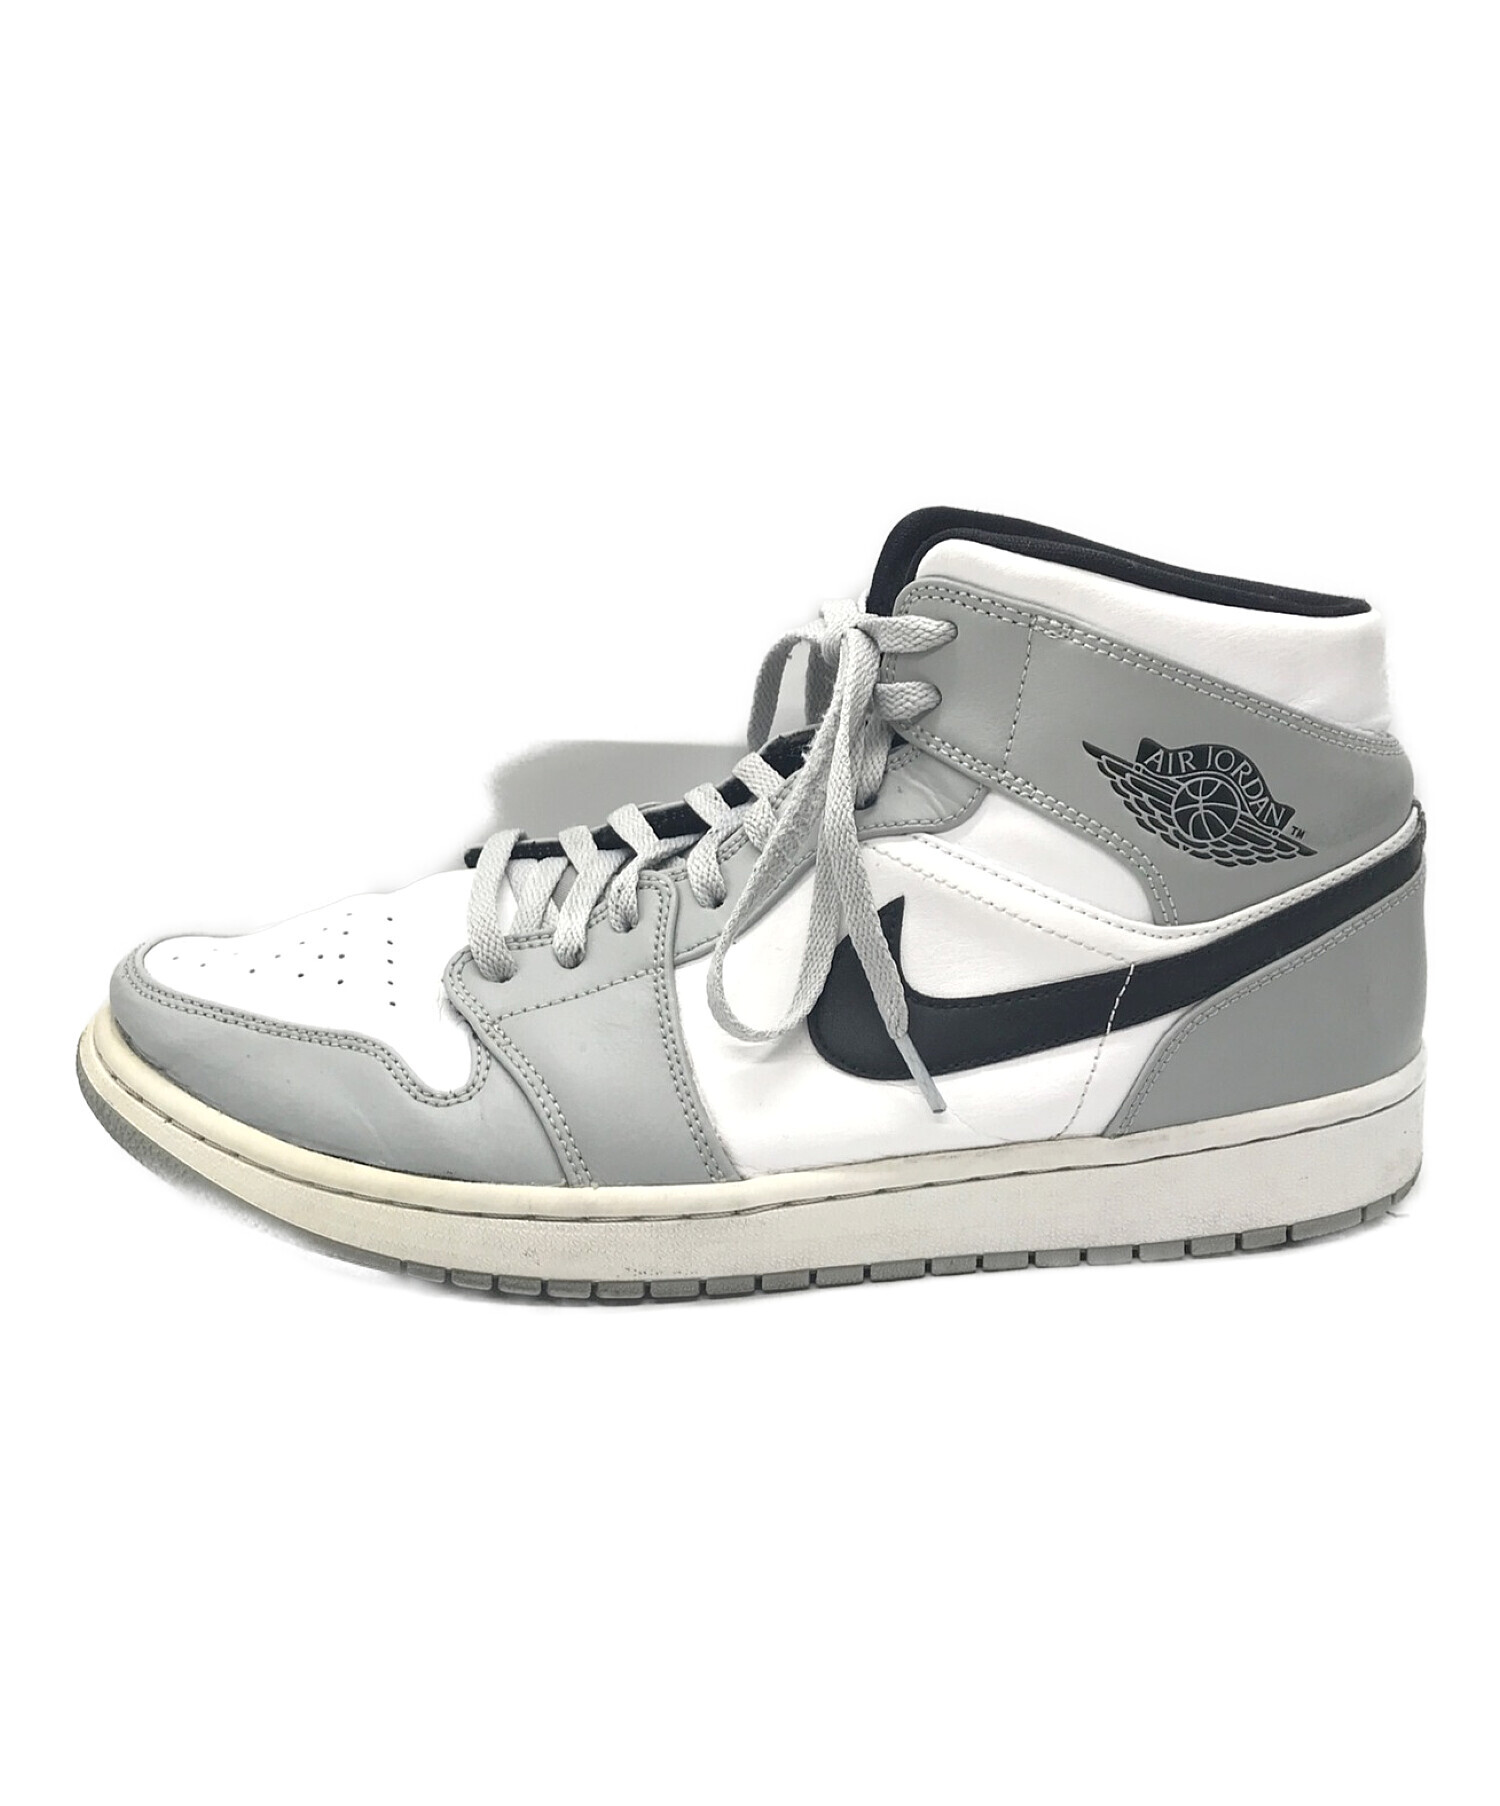 NikeAi【新品未使用】Nike Air Jordan 1 Low OG サイズ30cm